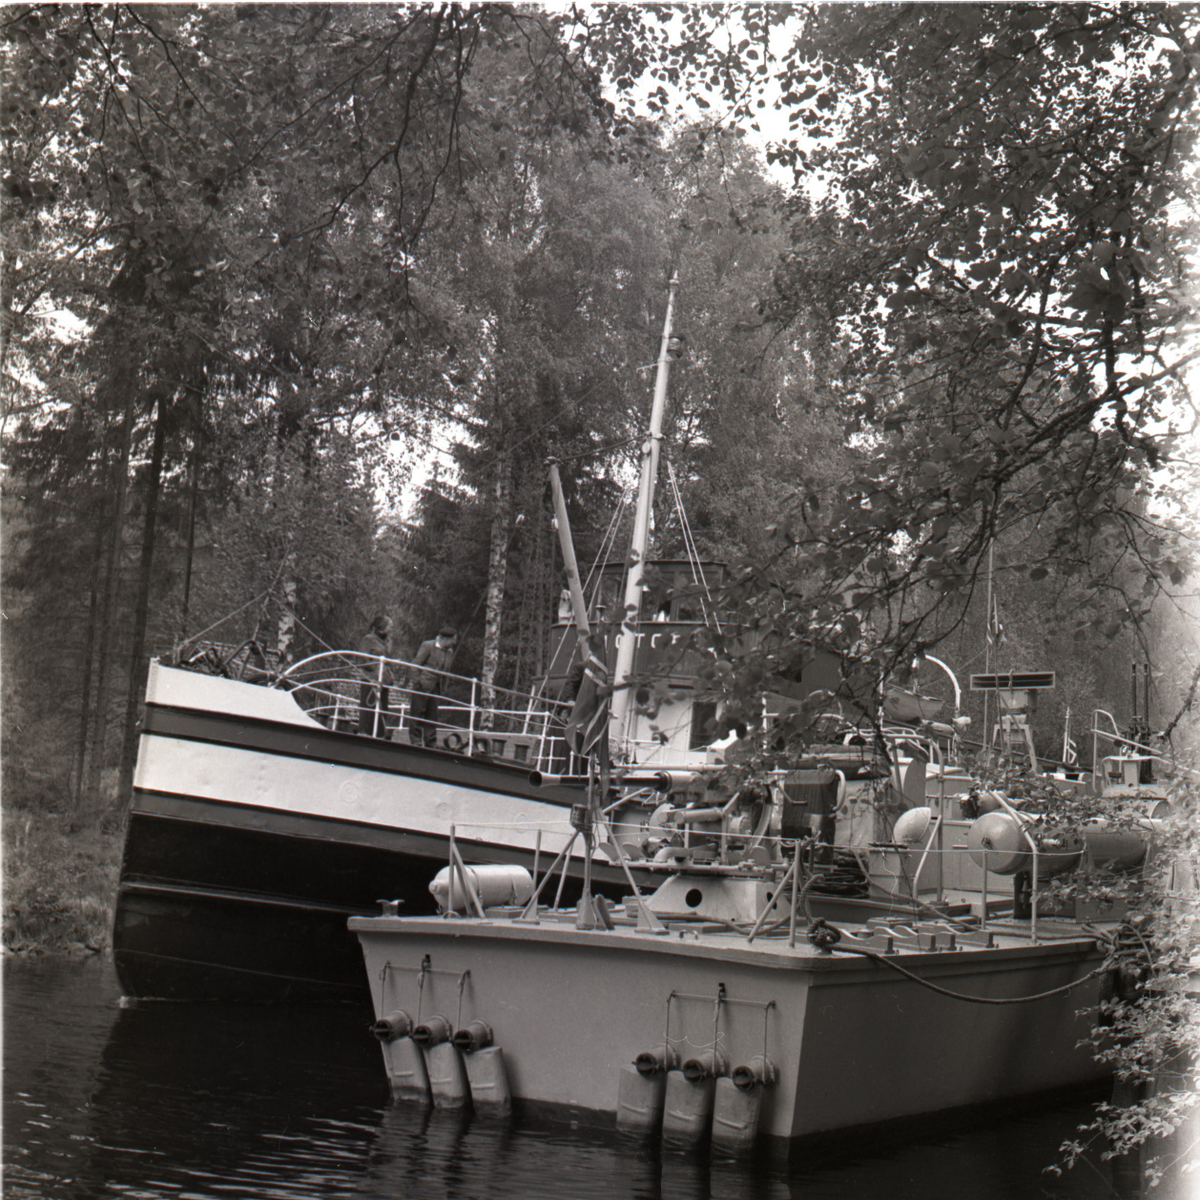 Samlefoto: Elco-klasse MTB-er gjennom Bandak-kanalen i juli 1953.
Kanalkjøring.